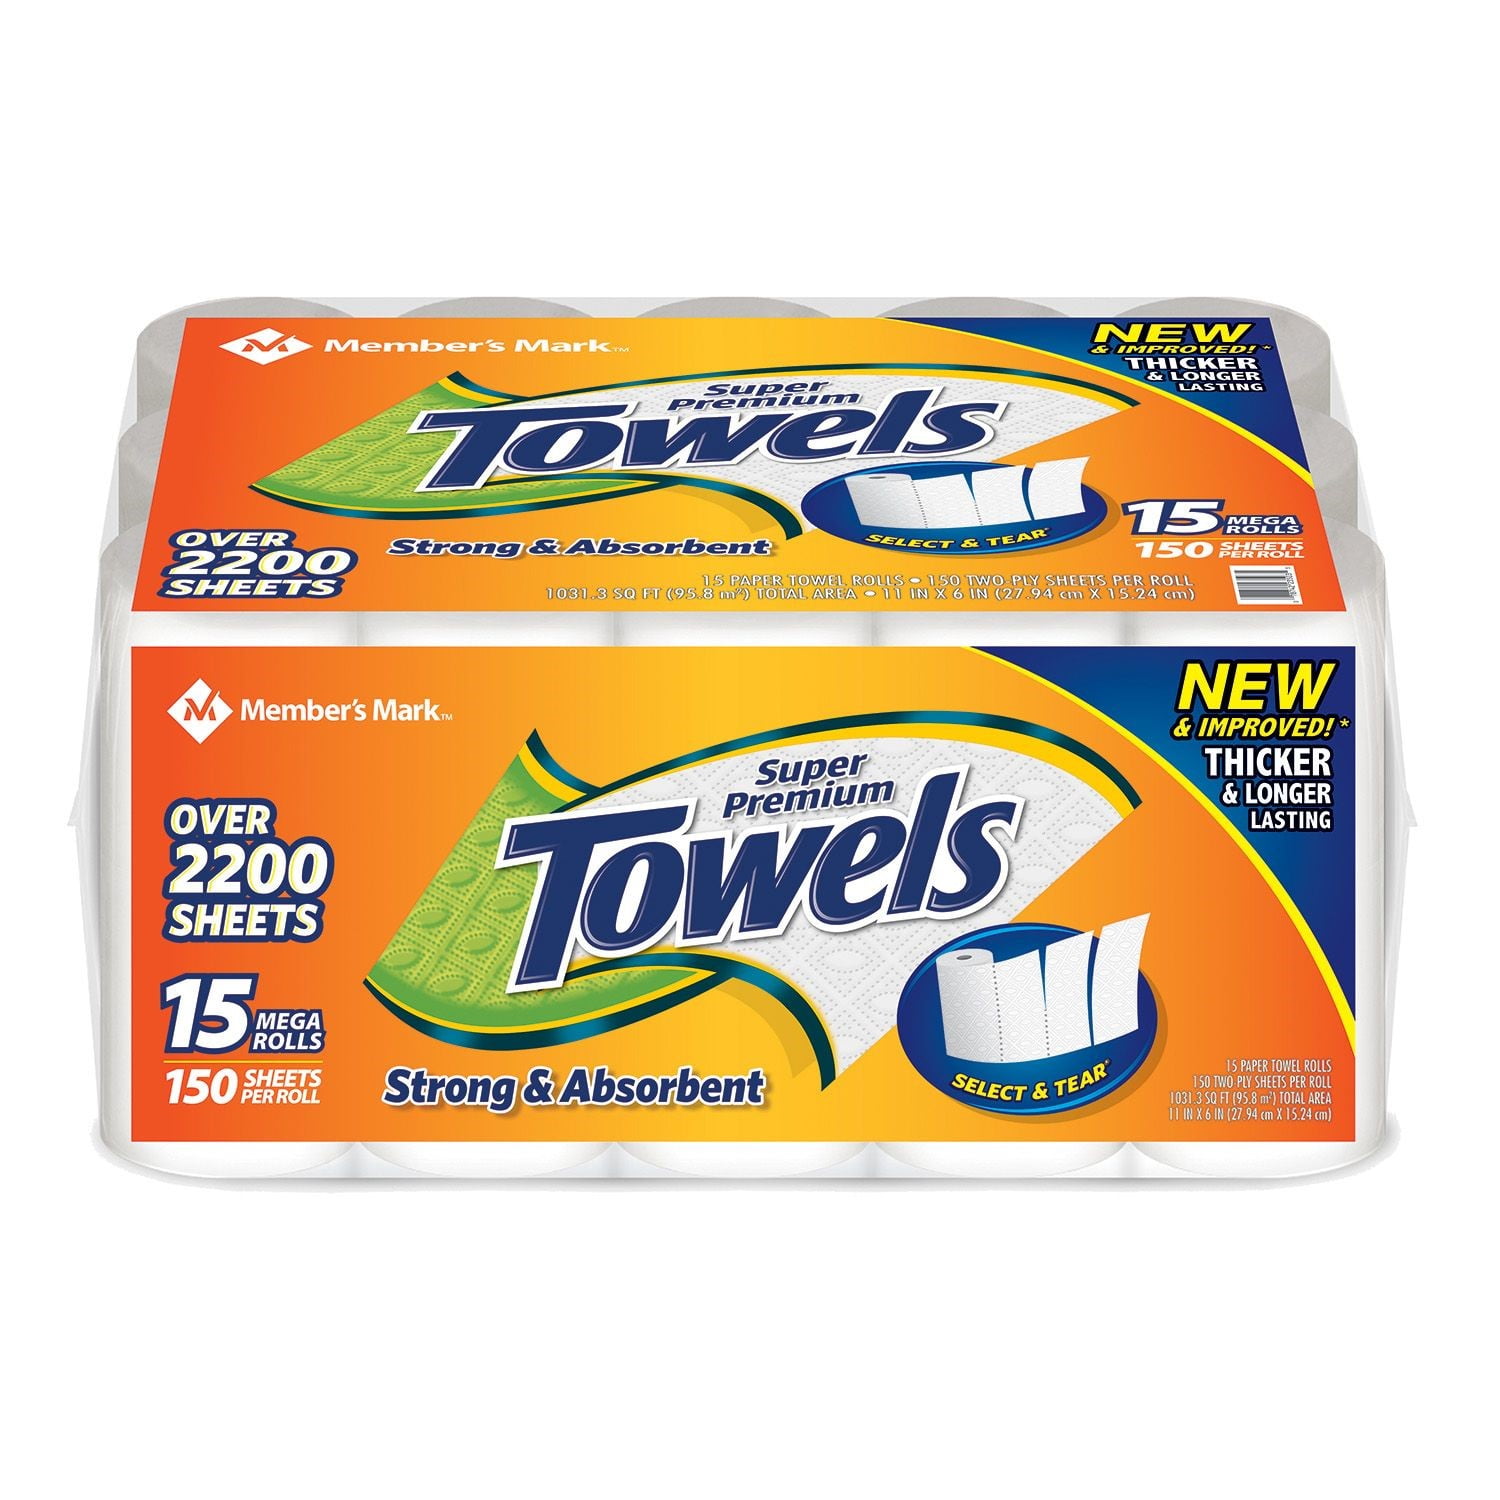 Member S Mark Super Premium Paper Towels Select Tear White 15 Mega Rolls Walmart Com